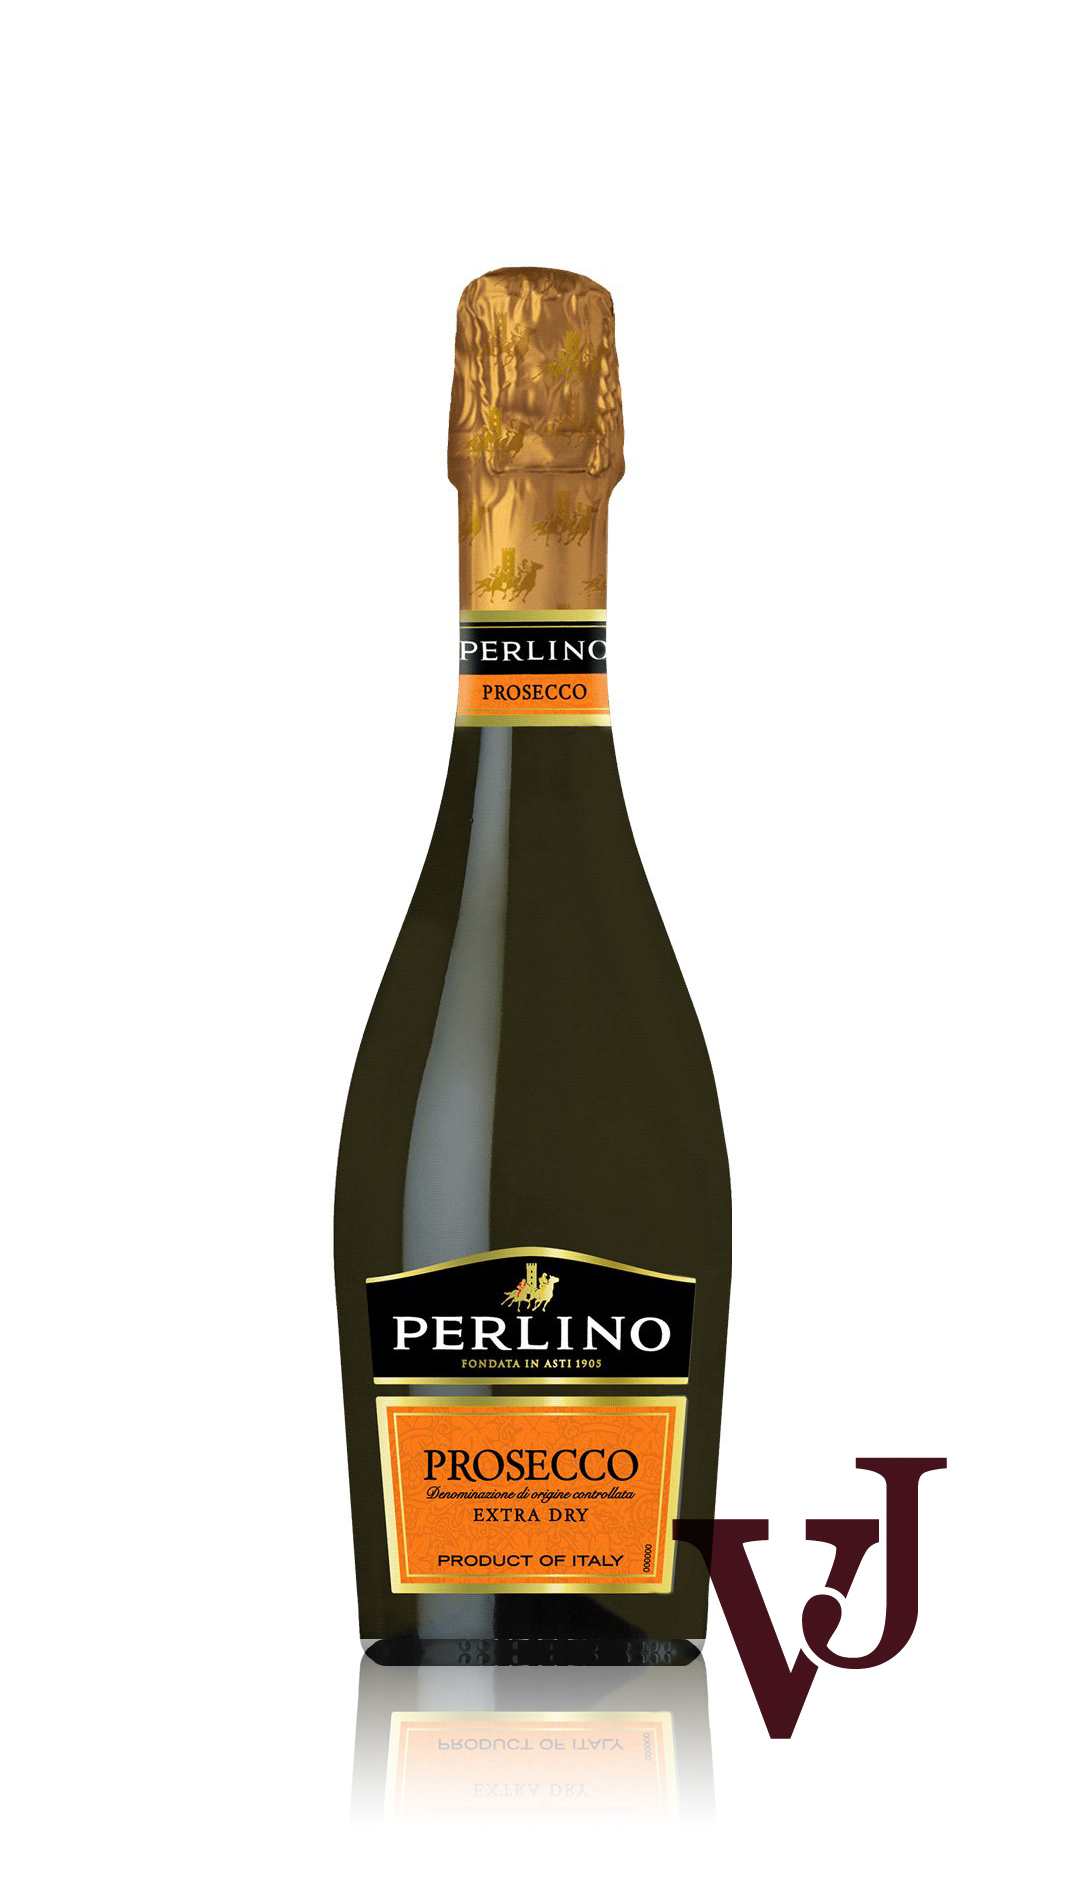 Mousserande Vin - Perlino Prosecco artikel nummer 5293202 från producenten Perlino från området Italien